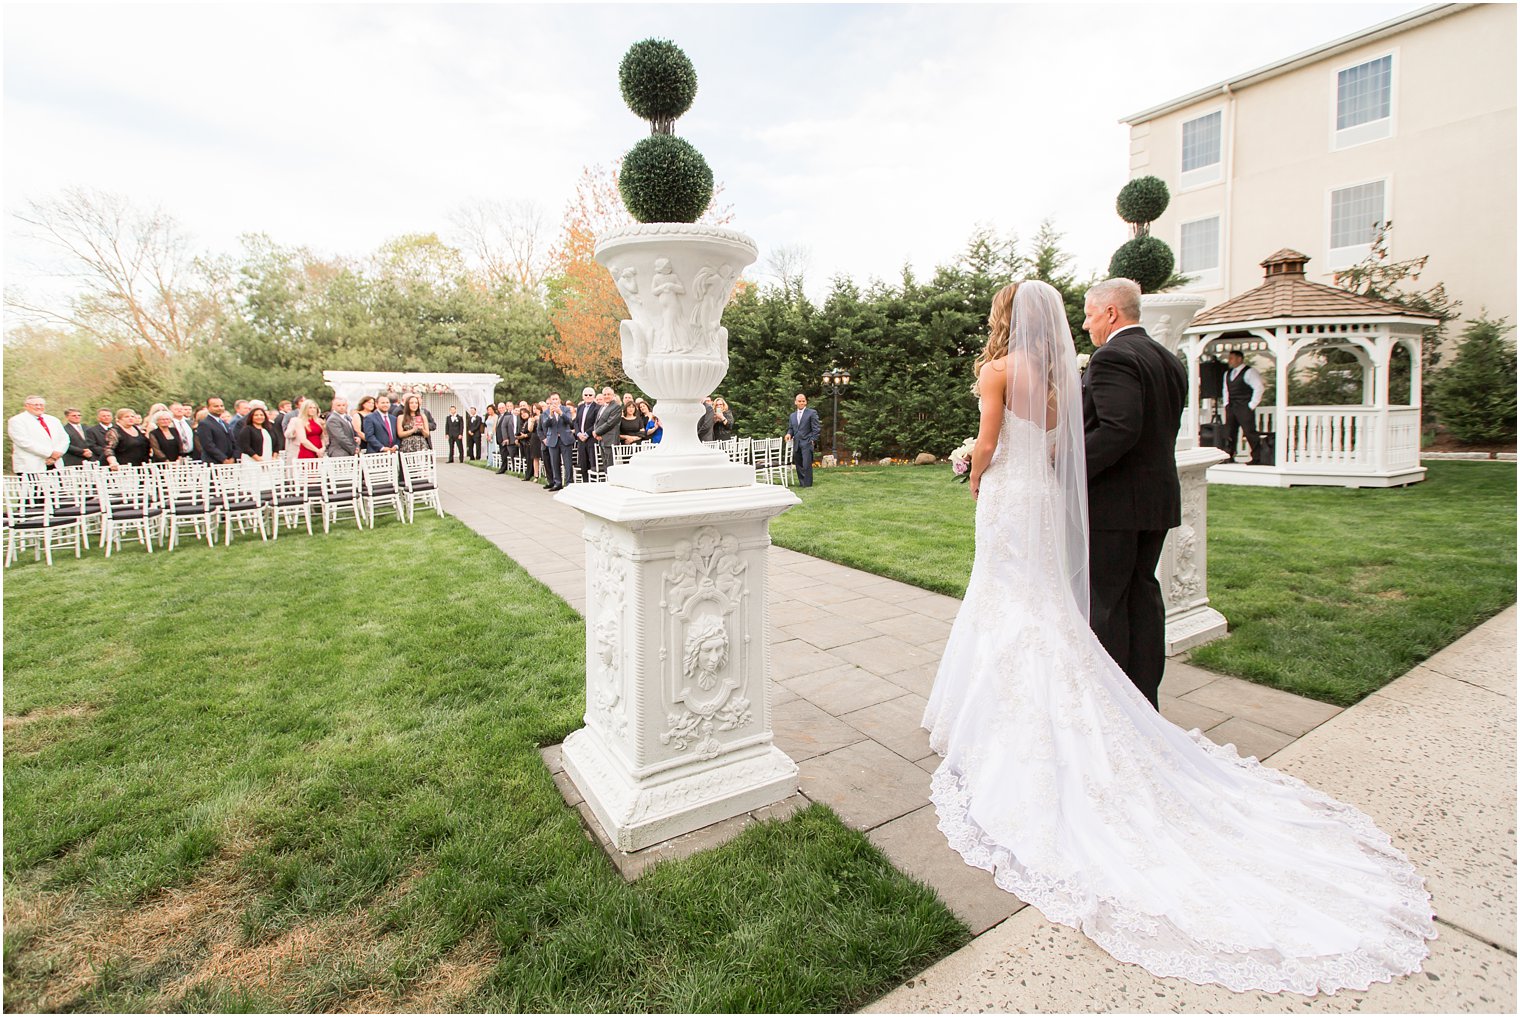 Outdoor ceremony | Wedding at Wilshire Grand in West Orange, NJ